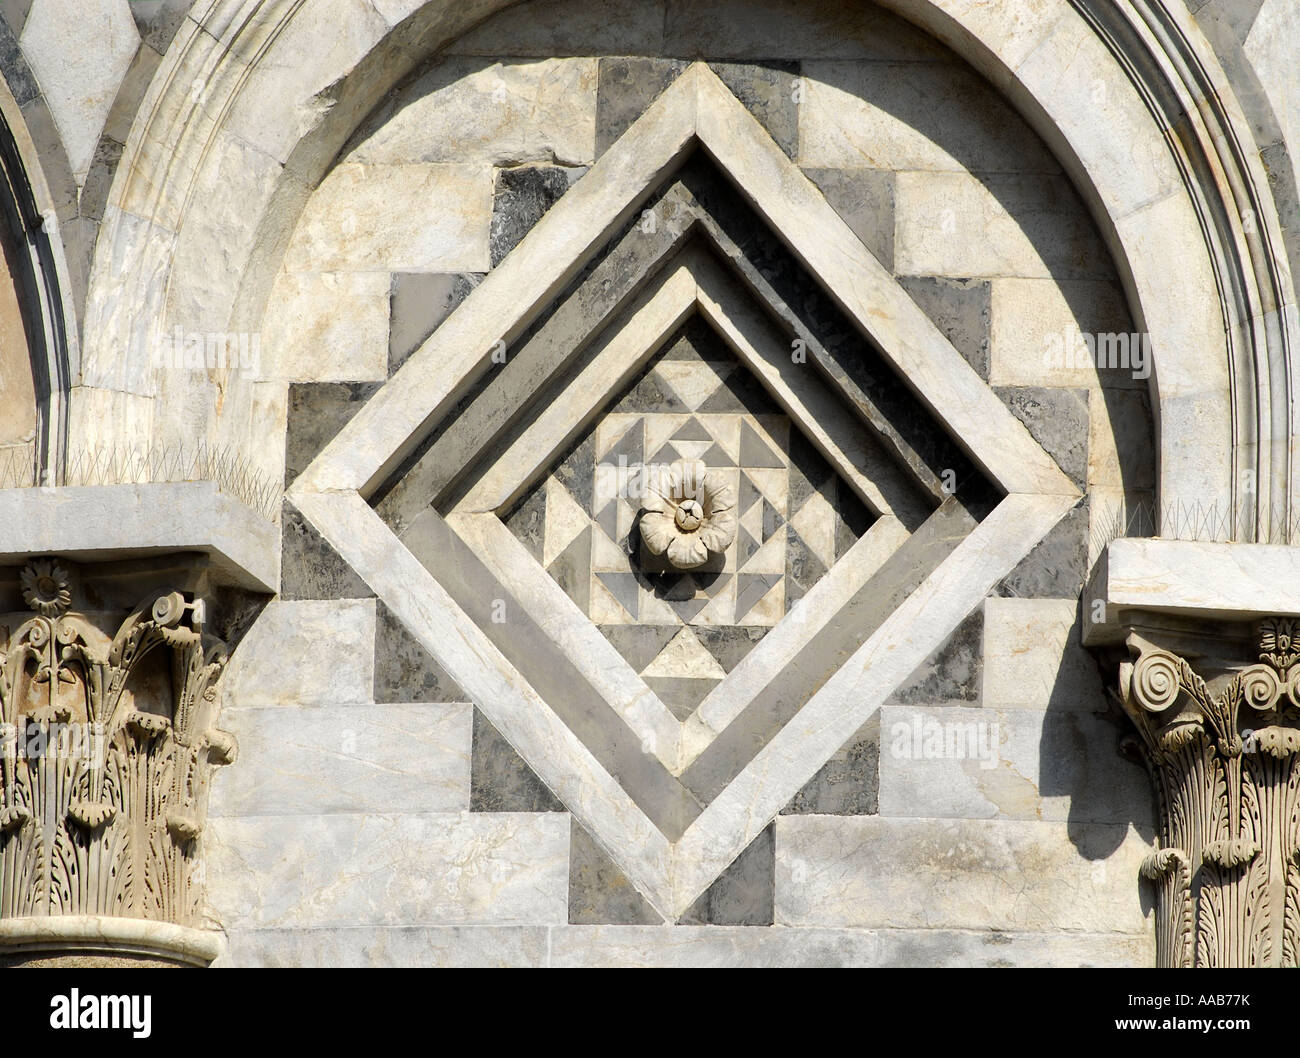 Détail de l'architecture en pierre sur les murs de la Cathédrale, La Cathédrale, Pisa , Italie Banque D'Images